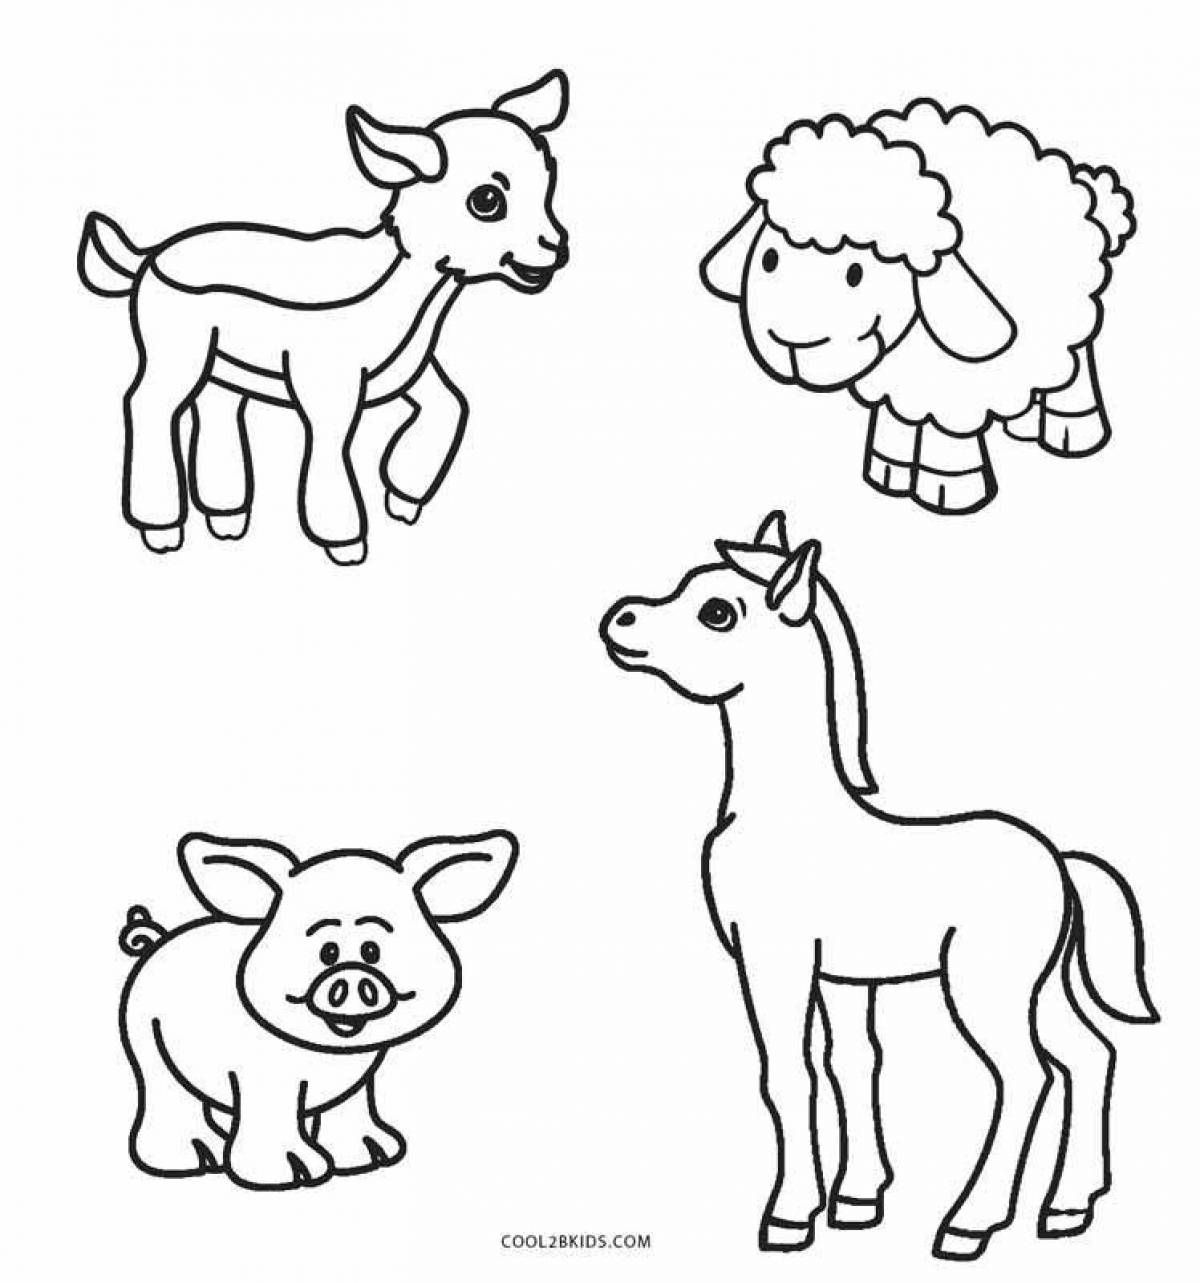 Раскраски животных для детей бесплатно распечатать